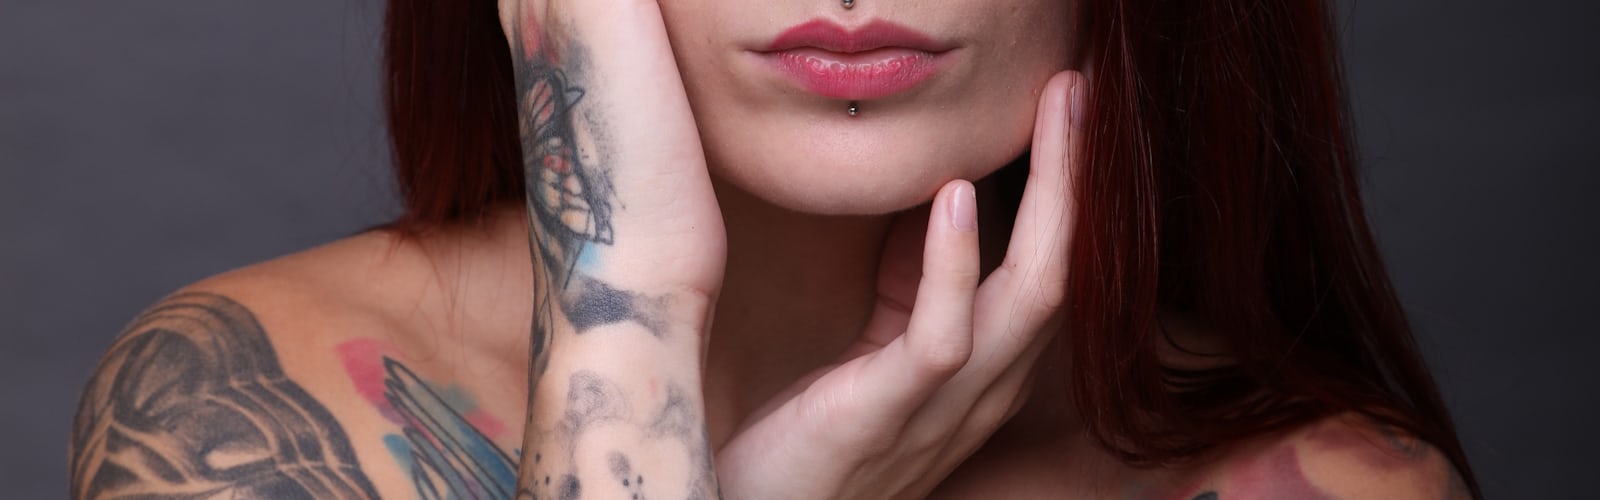 tattoo 100+ best free tattoo, human, skin and arm photos